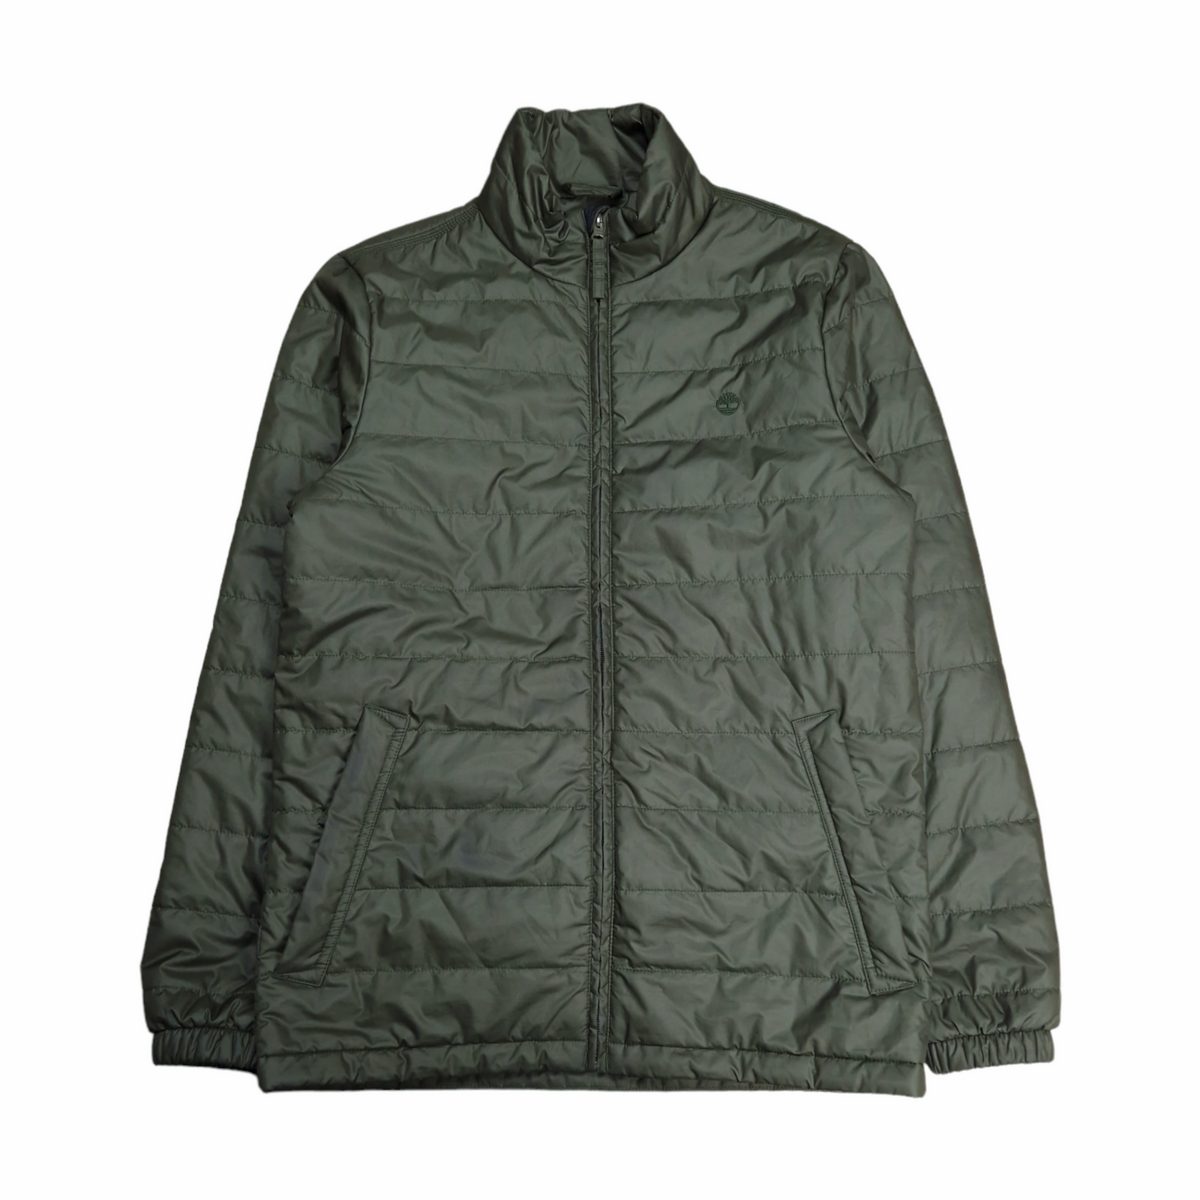 Timberland Jacket - Size Small